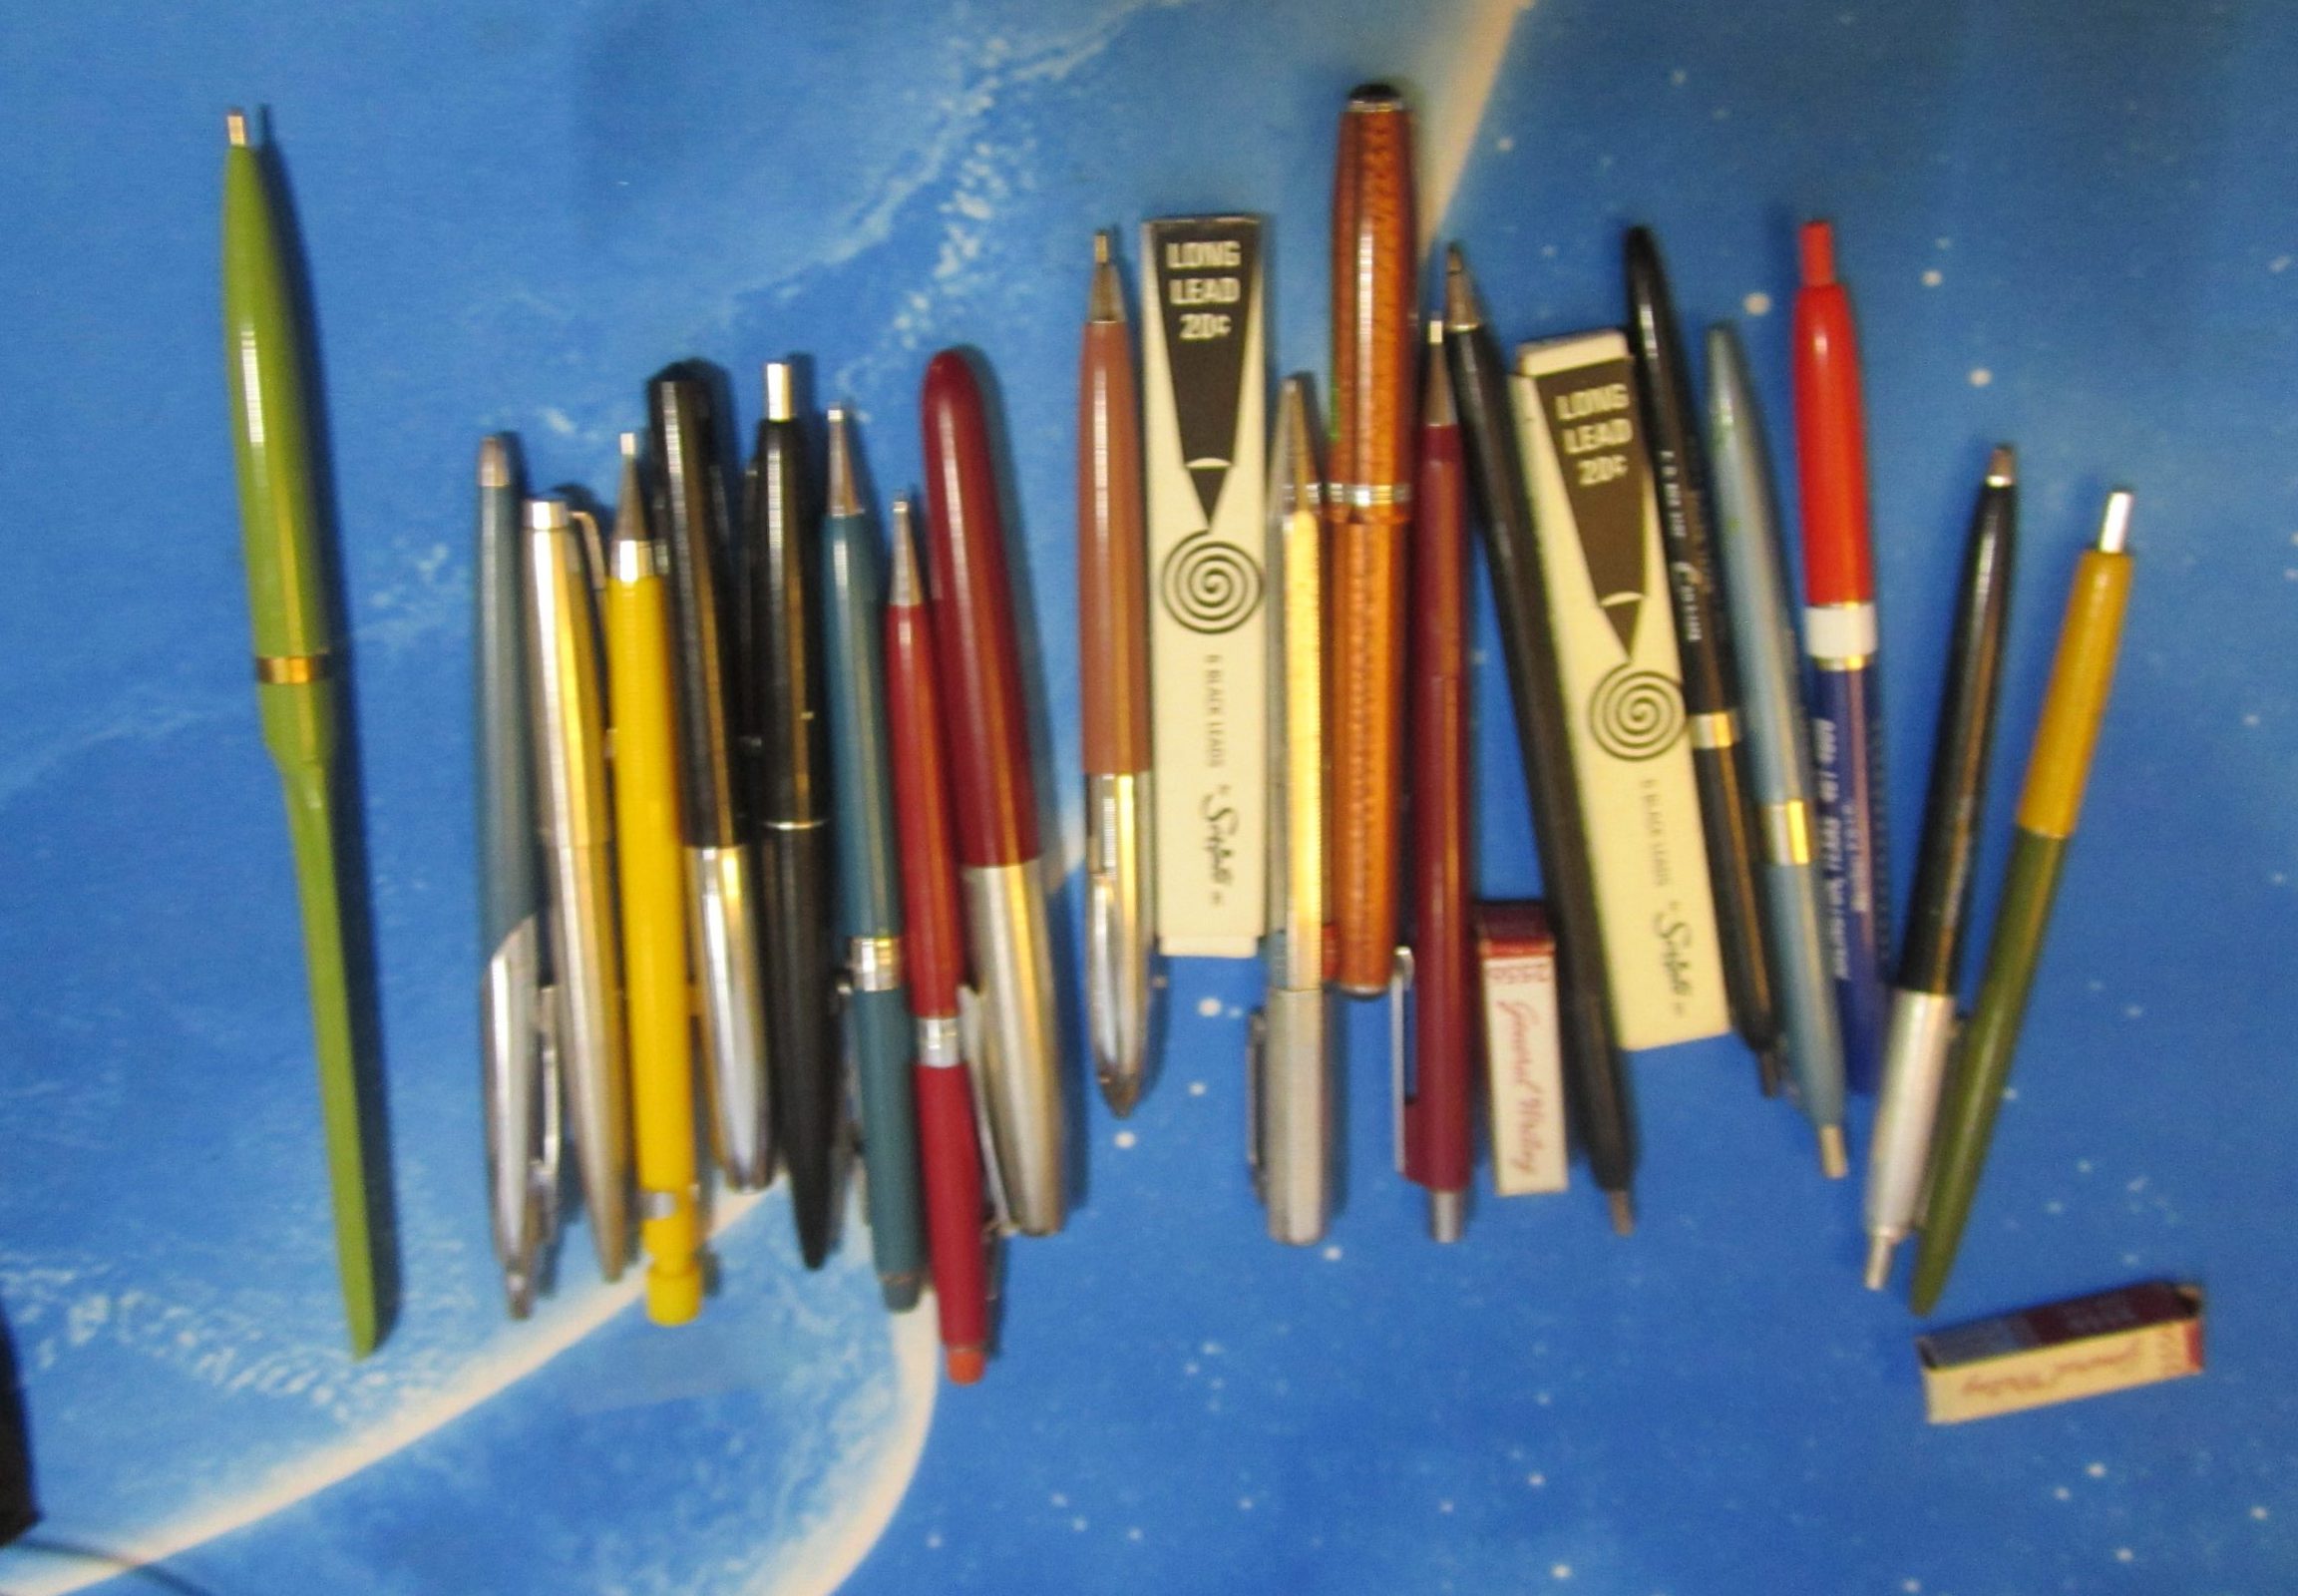 Pen/Pencil Review] The BIC Disposable Fountain Pen – Rhonda Eudaly